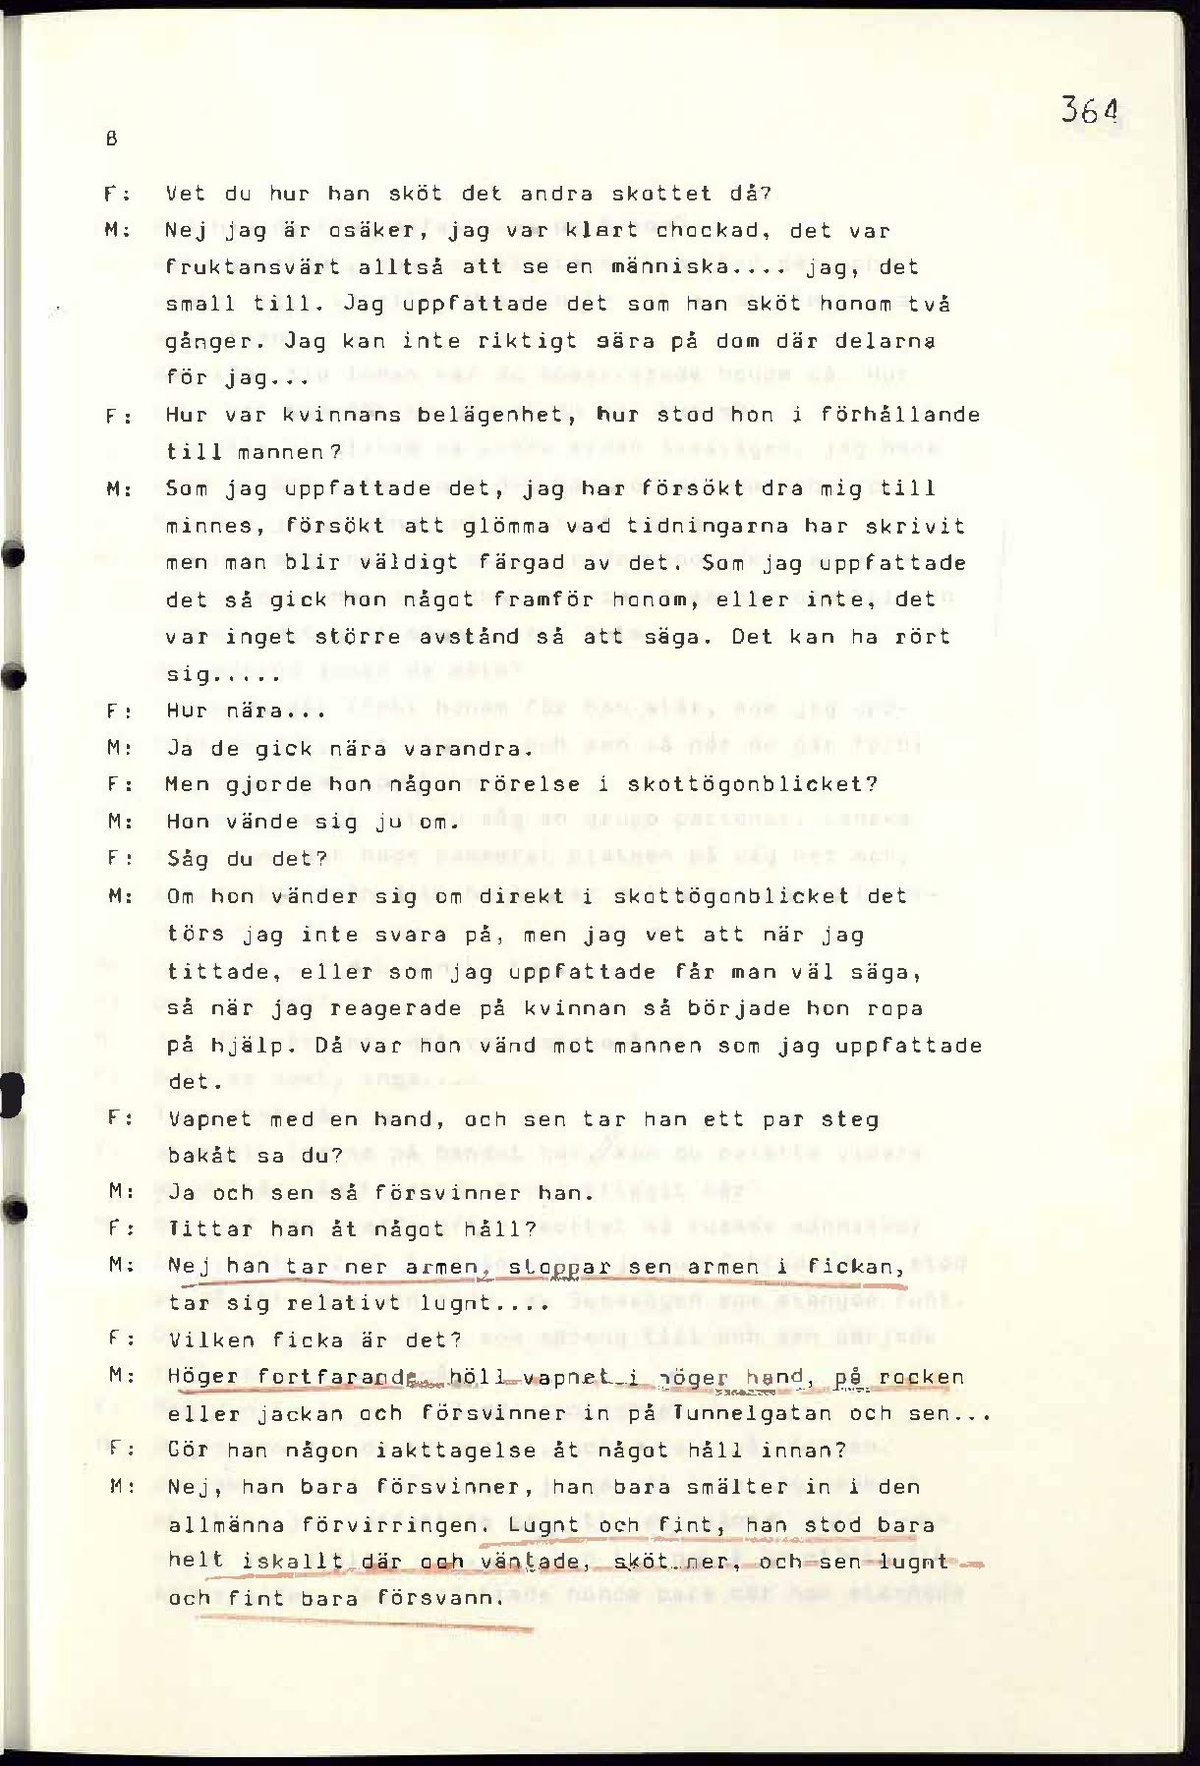 Pol-1986-03-14 1030 E107-00-A Förhör med Inge Morelius.pdf